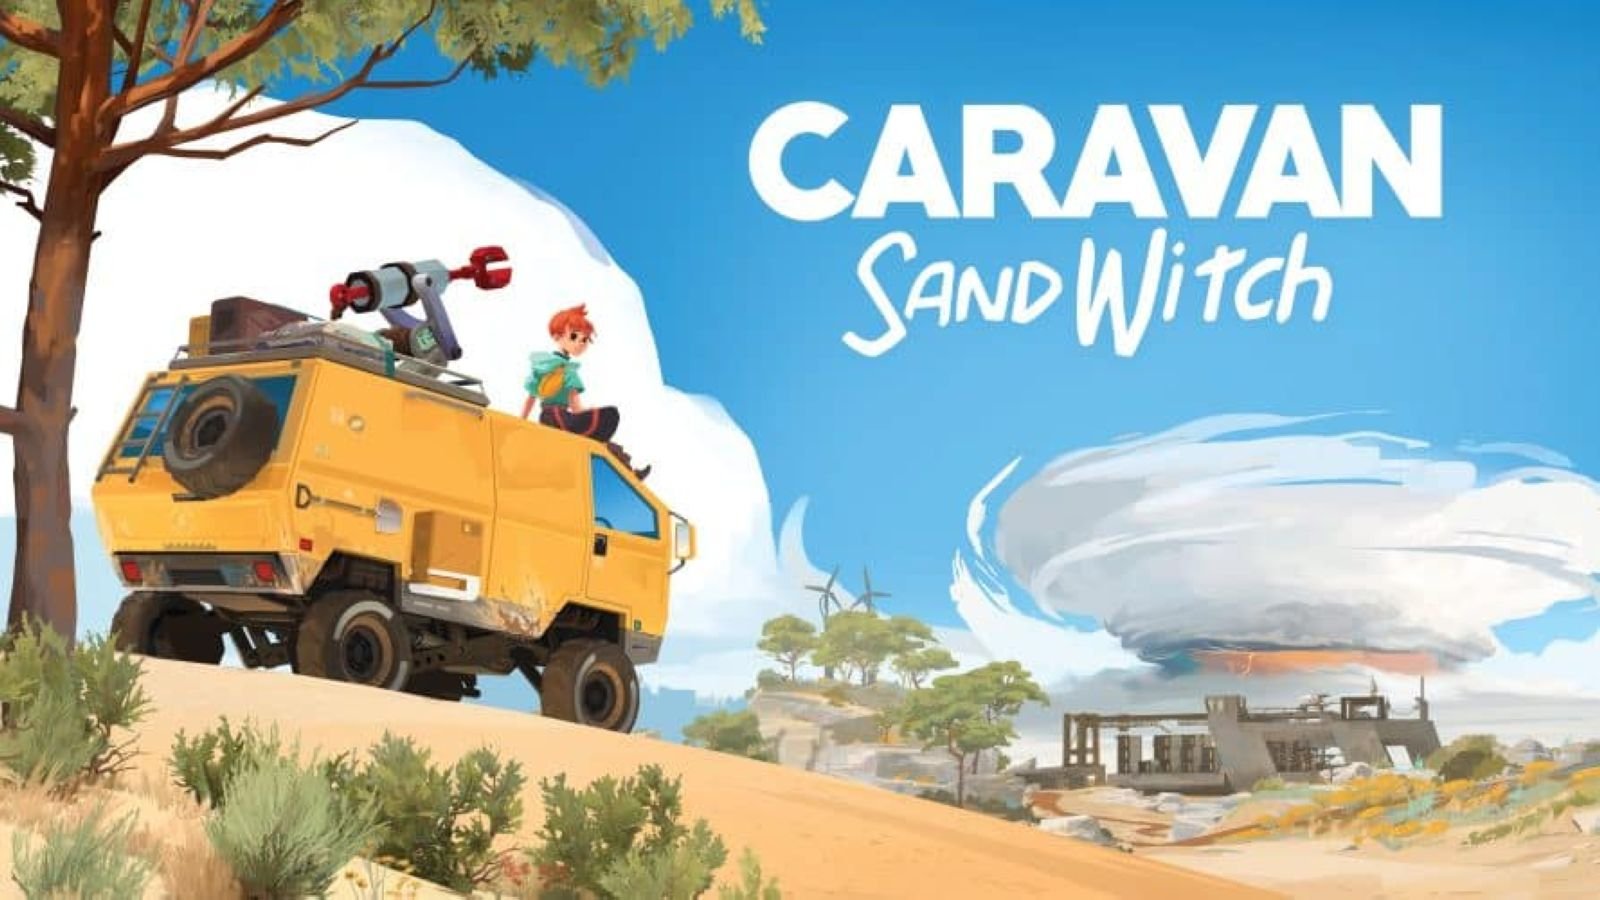 Caravan SandWitch : une nouvelle bande-annonce pour le jeu français inspiré de la Provence